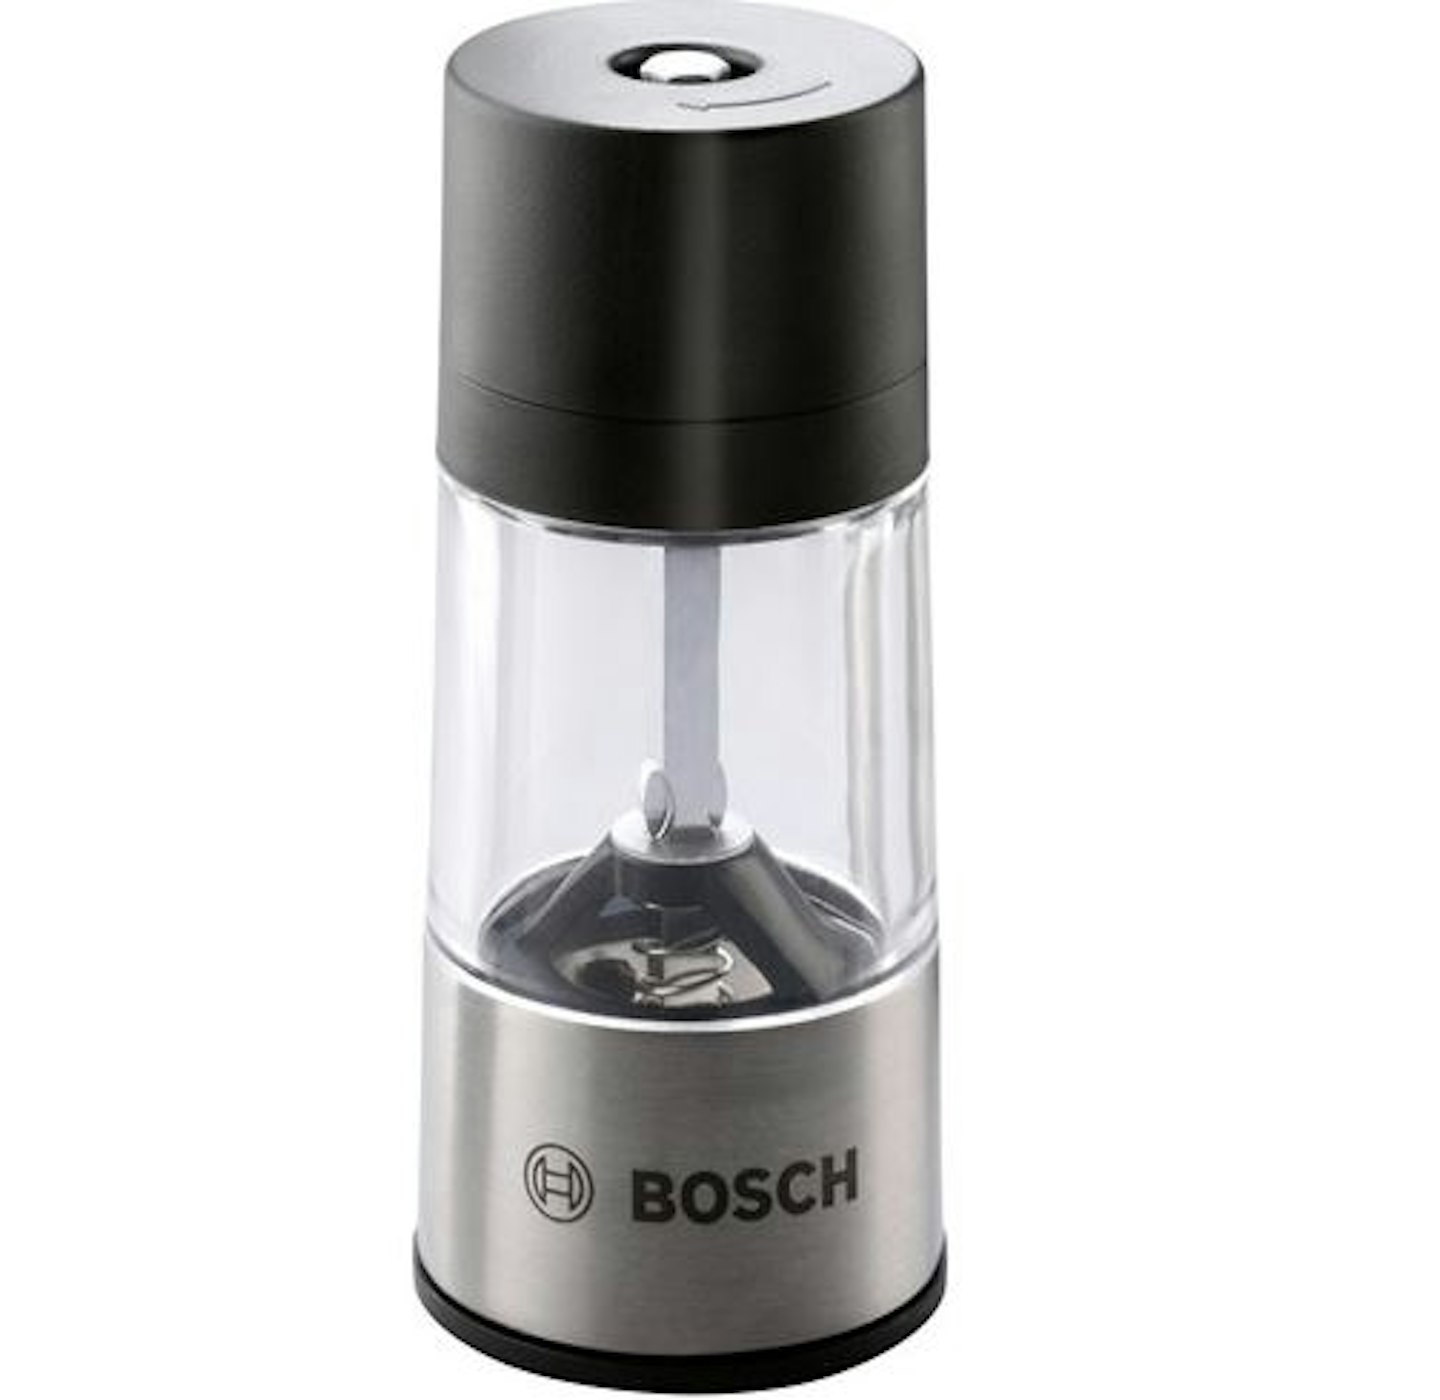 Bosch IXO Spice Mill Attachment